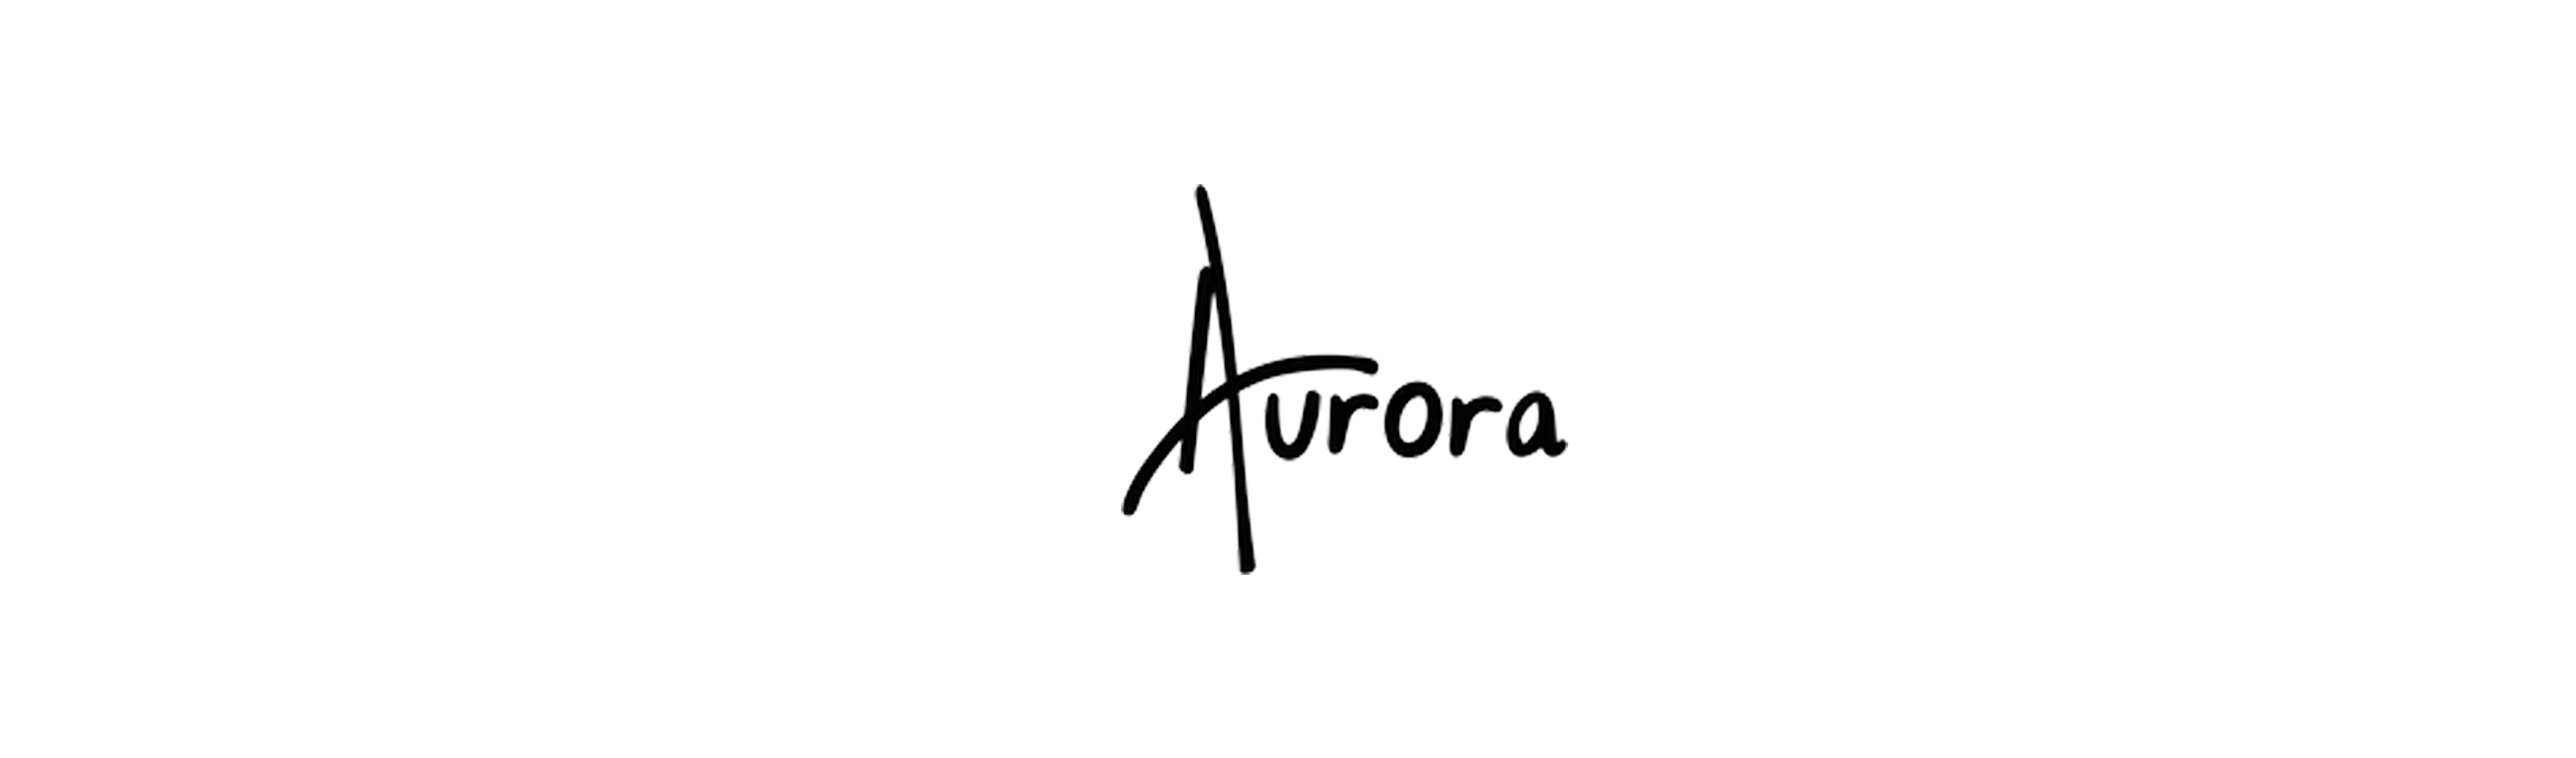 Ritika Aurora